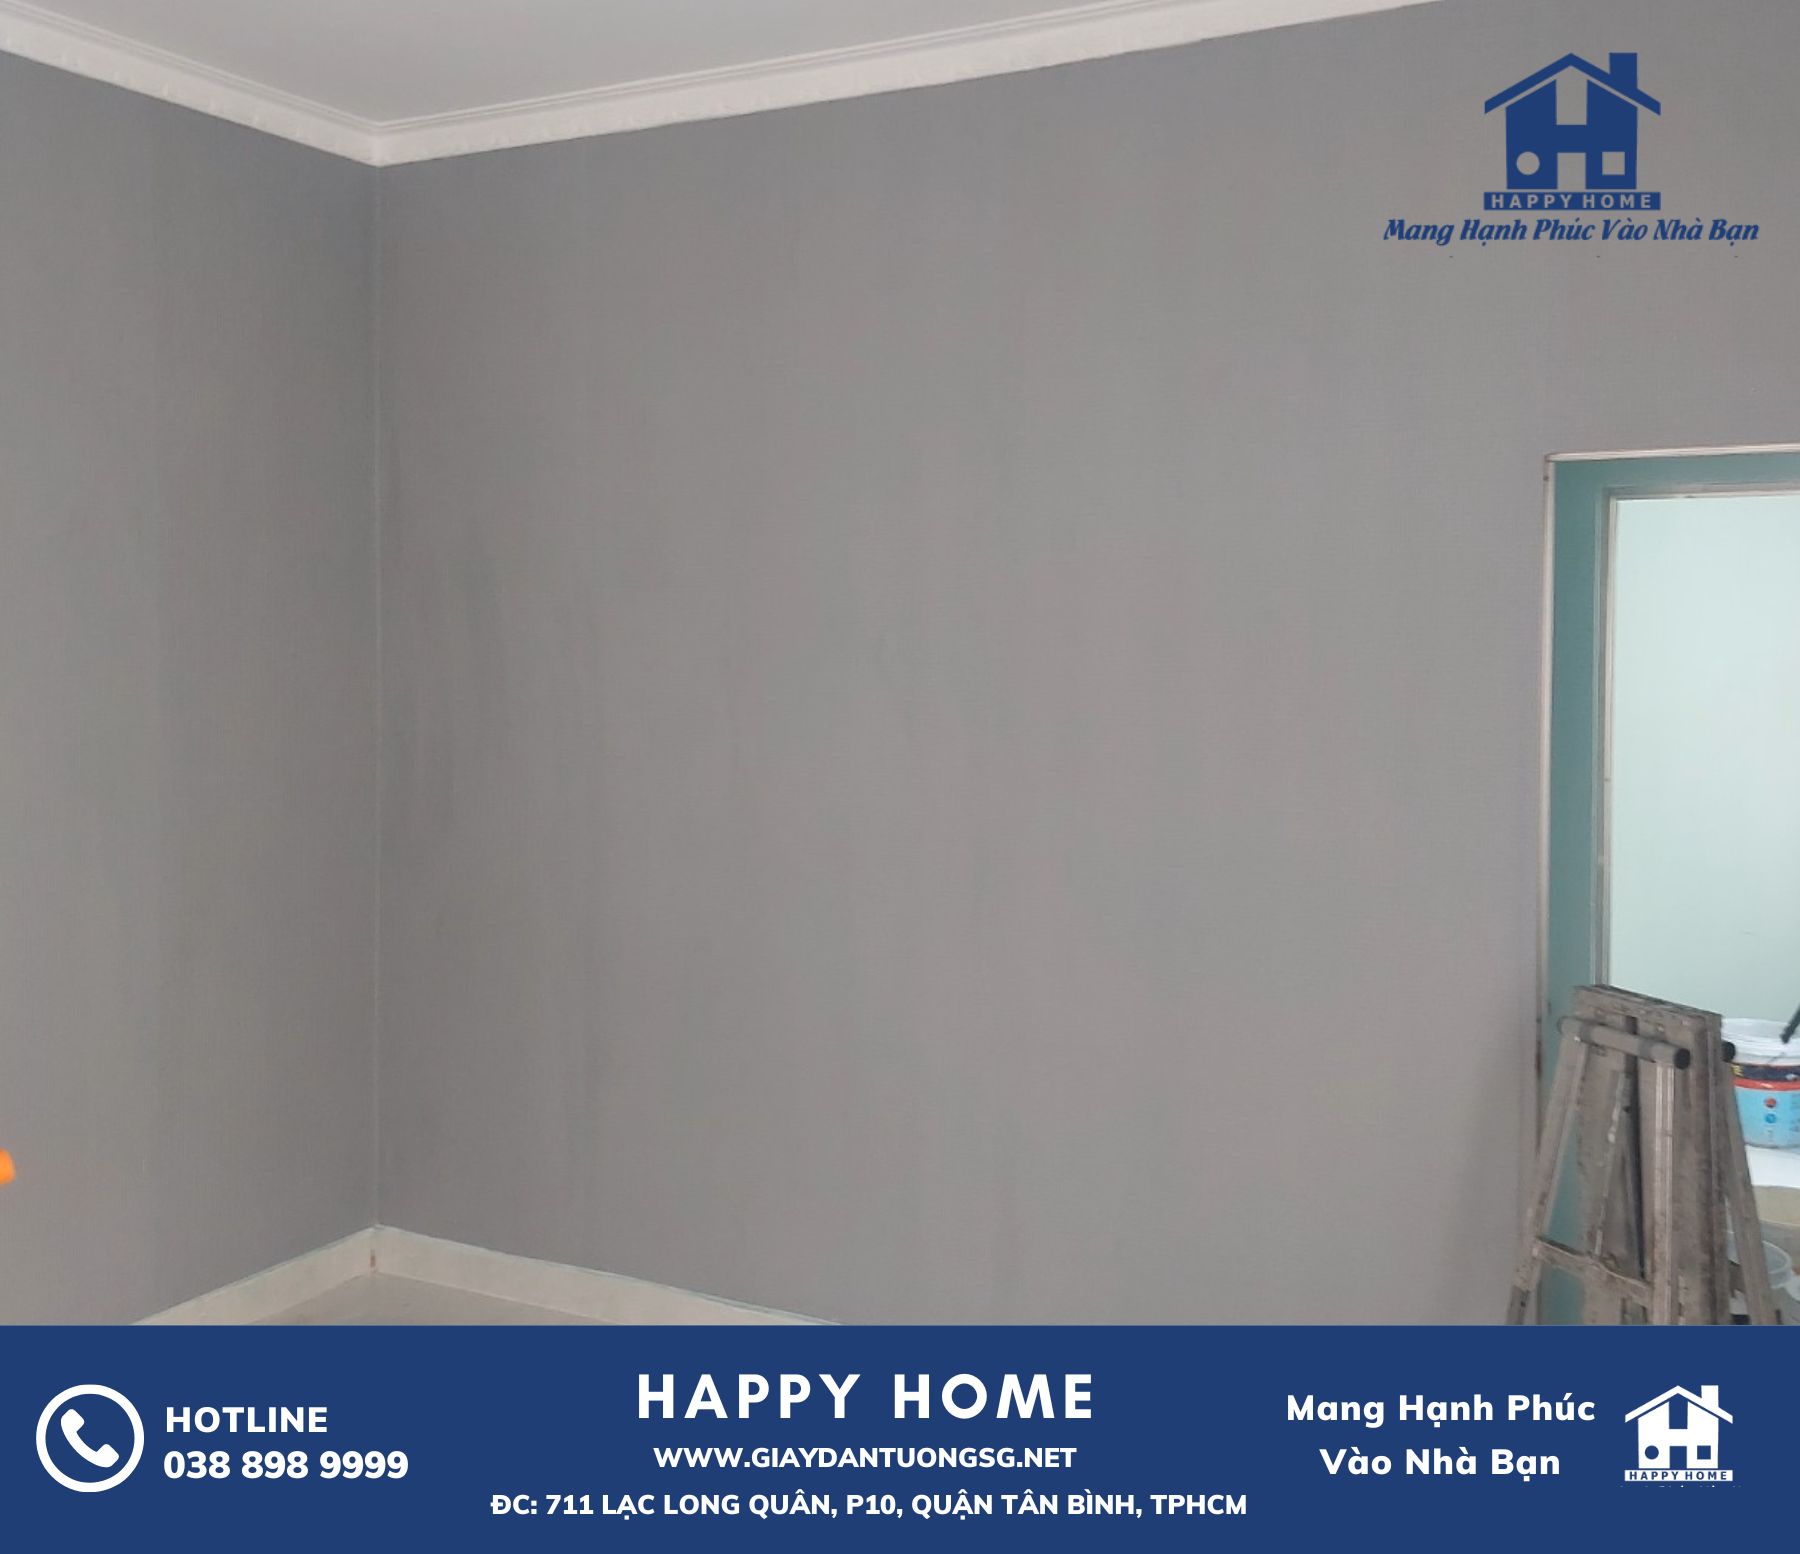 Tạo nét riêng cho ngôi nhà của bạn với giấy dán tường Happy Home